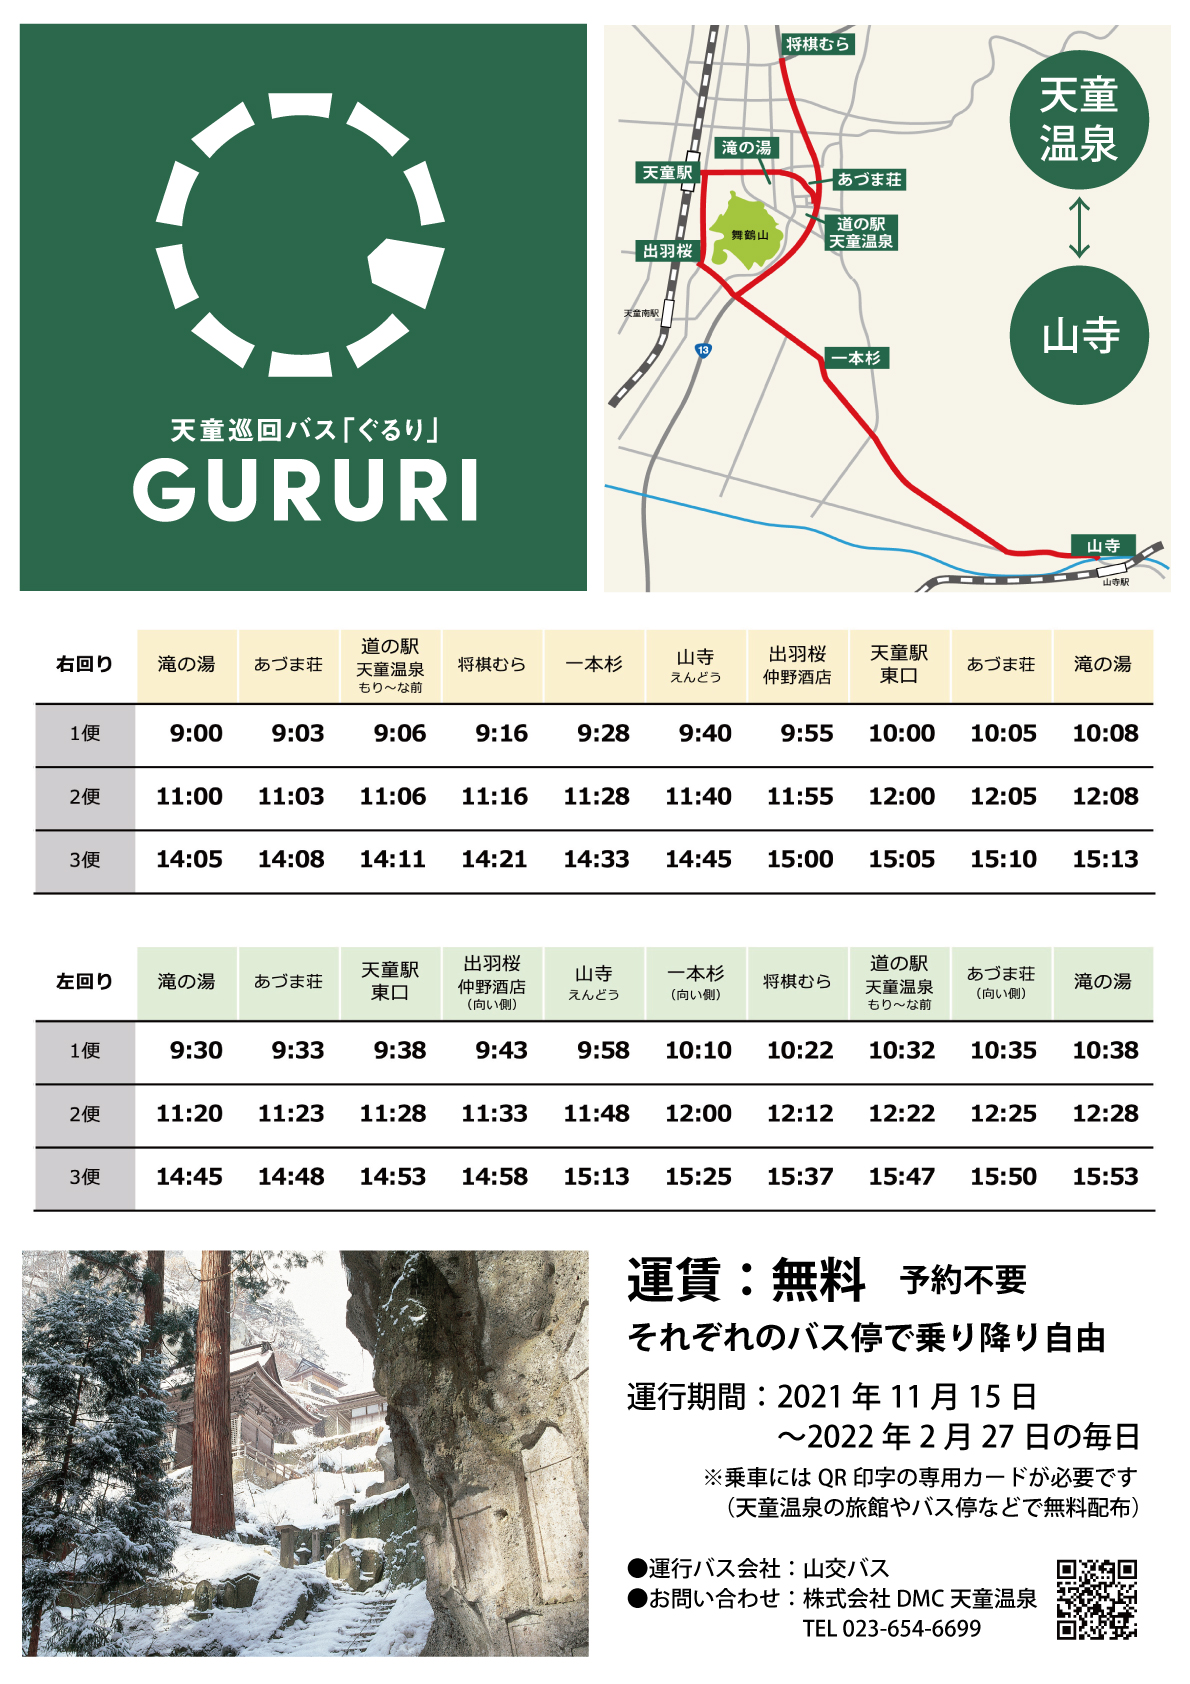 天童巡回バスGURURI　無料運行中！（2022年2月27日まで）